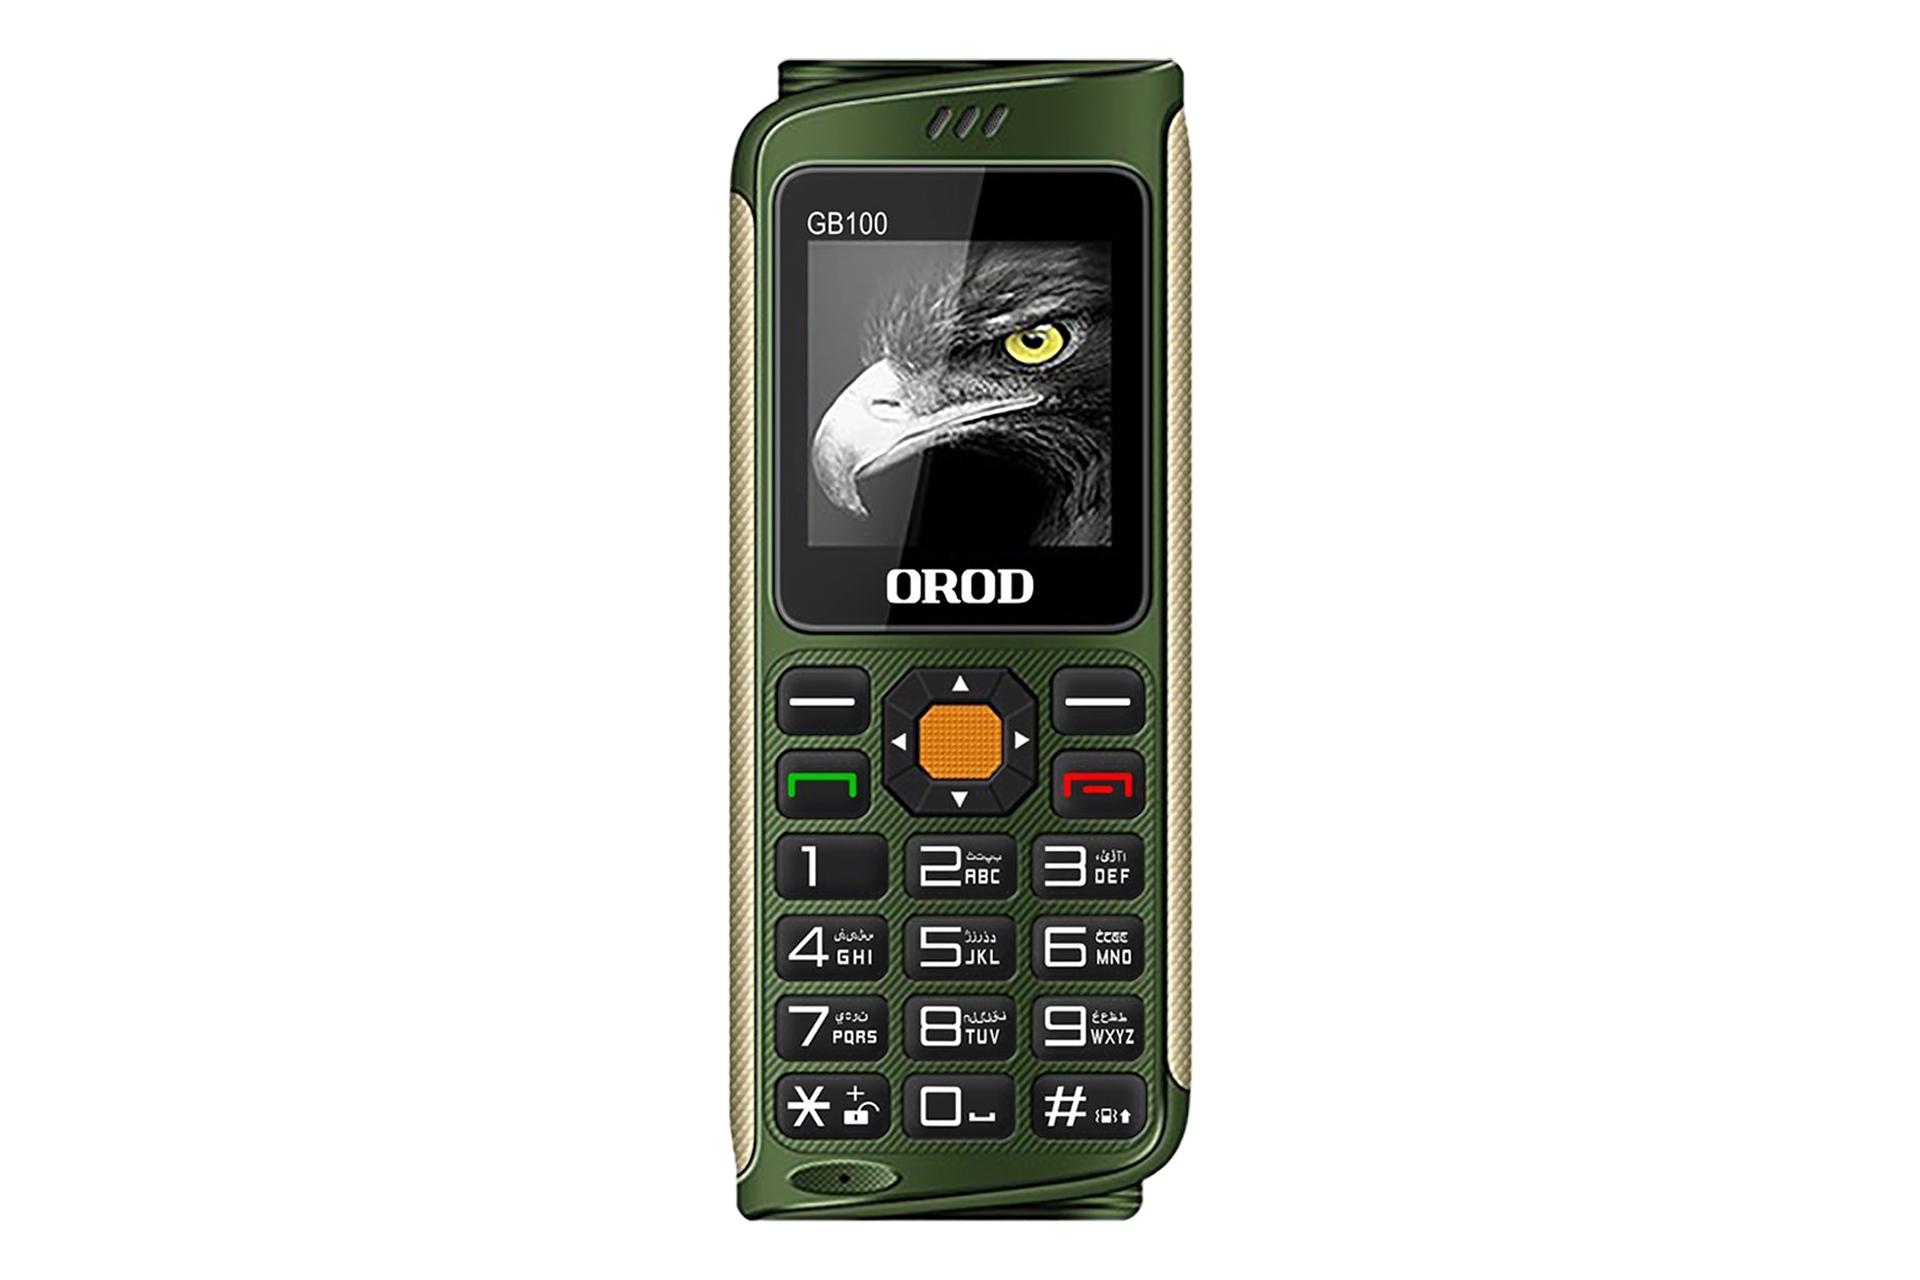 گوشی موبایل جی بی 100 ارد OROD GB100 سبز